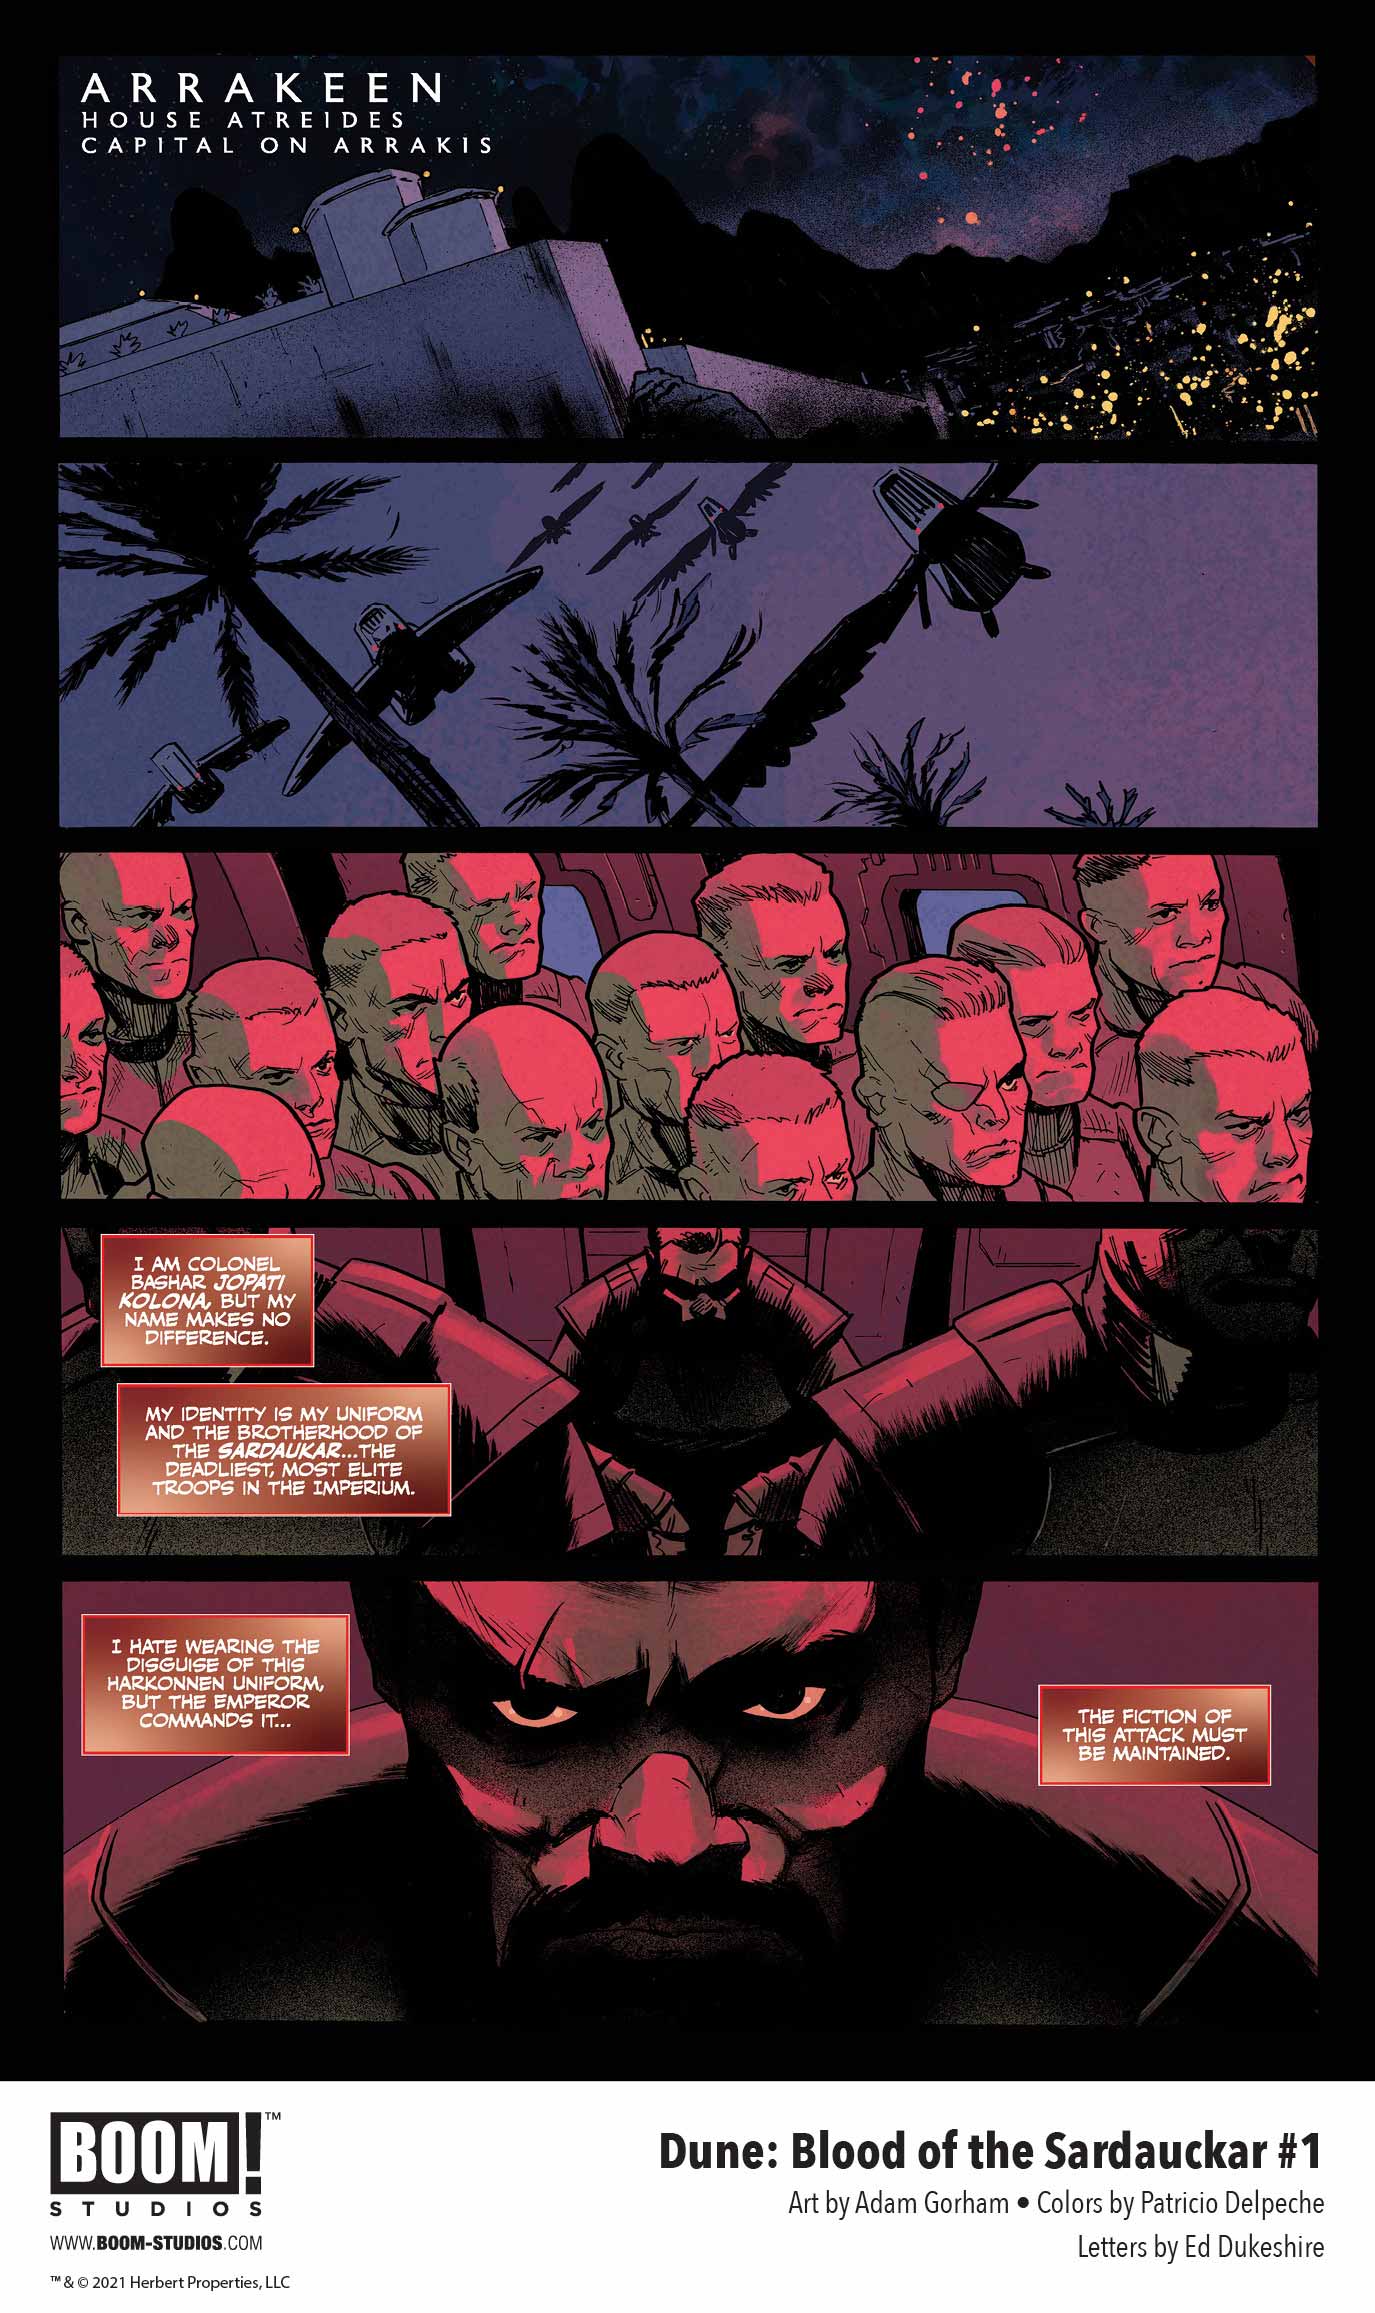 Dune: Blood of the Sardaukar comic book, preview page 2.